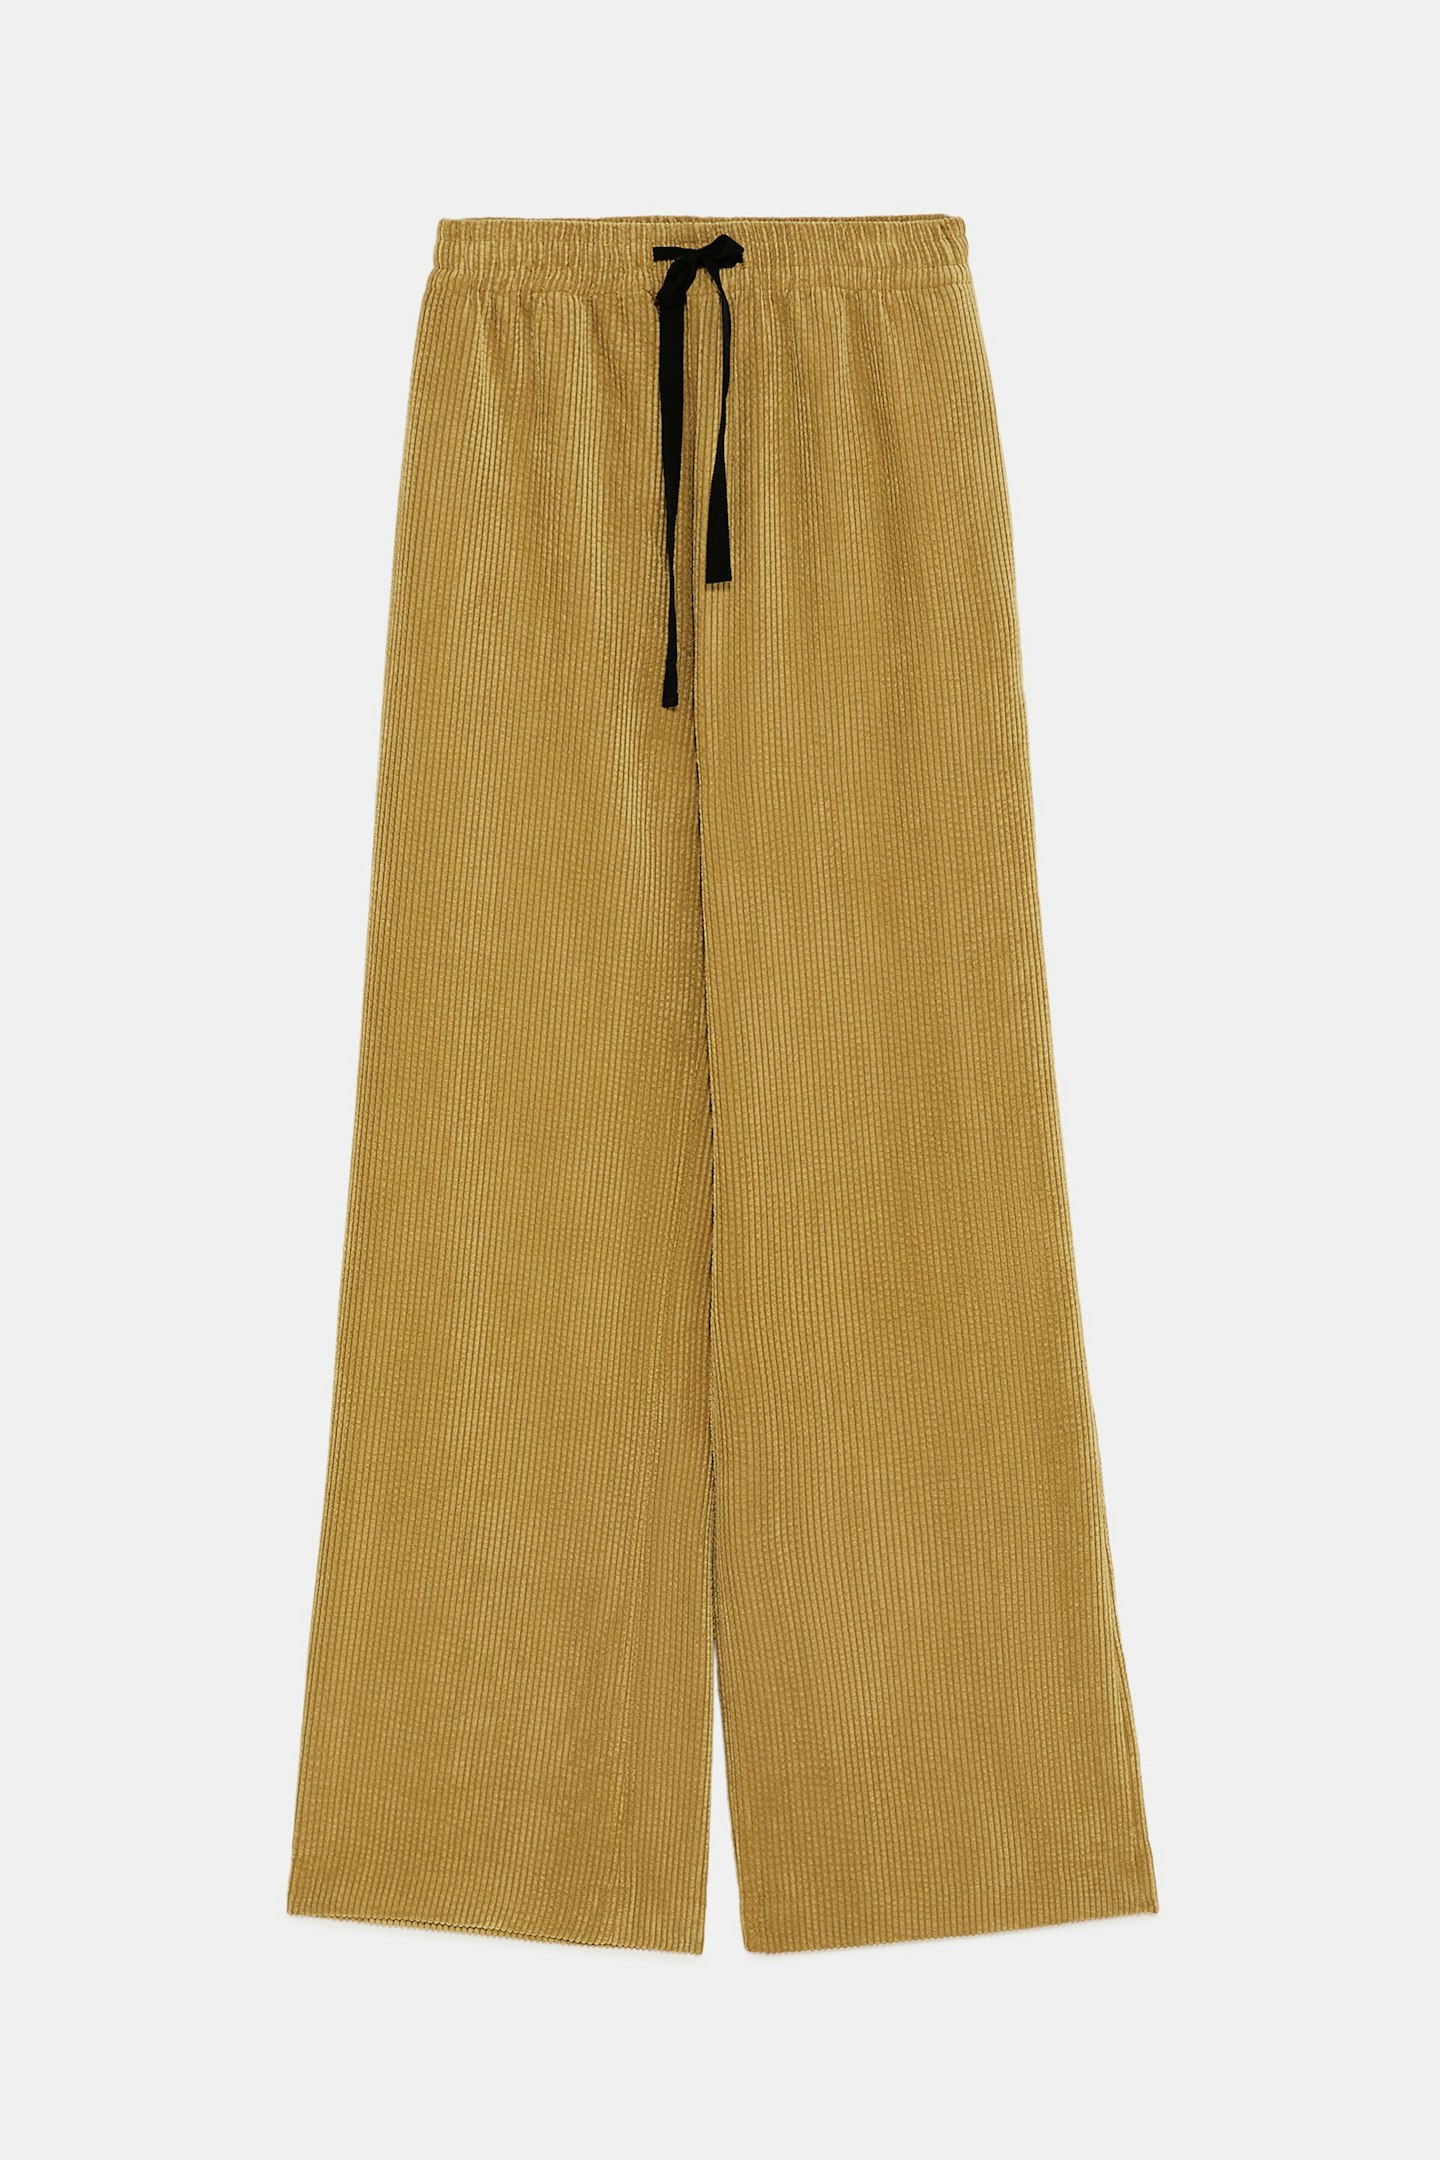 Zara, Corduroy Pyjama-Style Trousers, £29.99